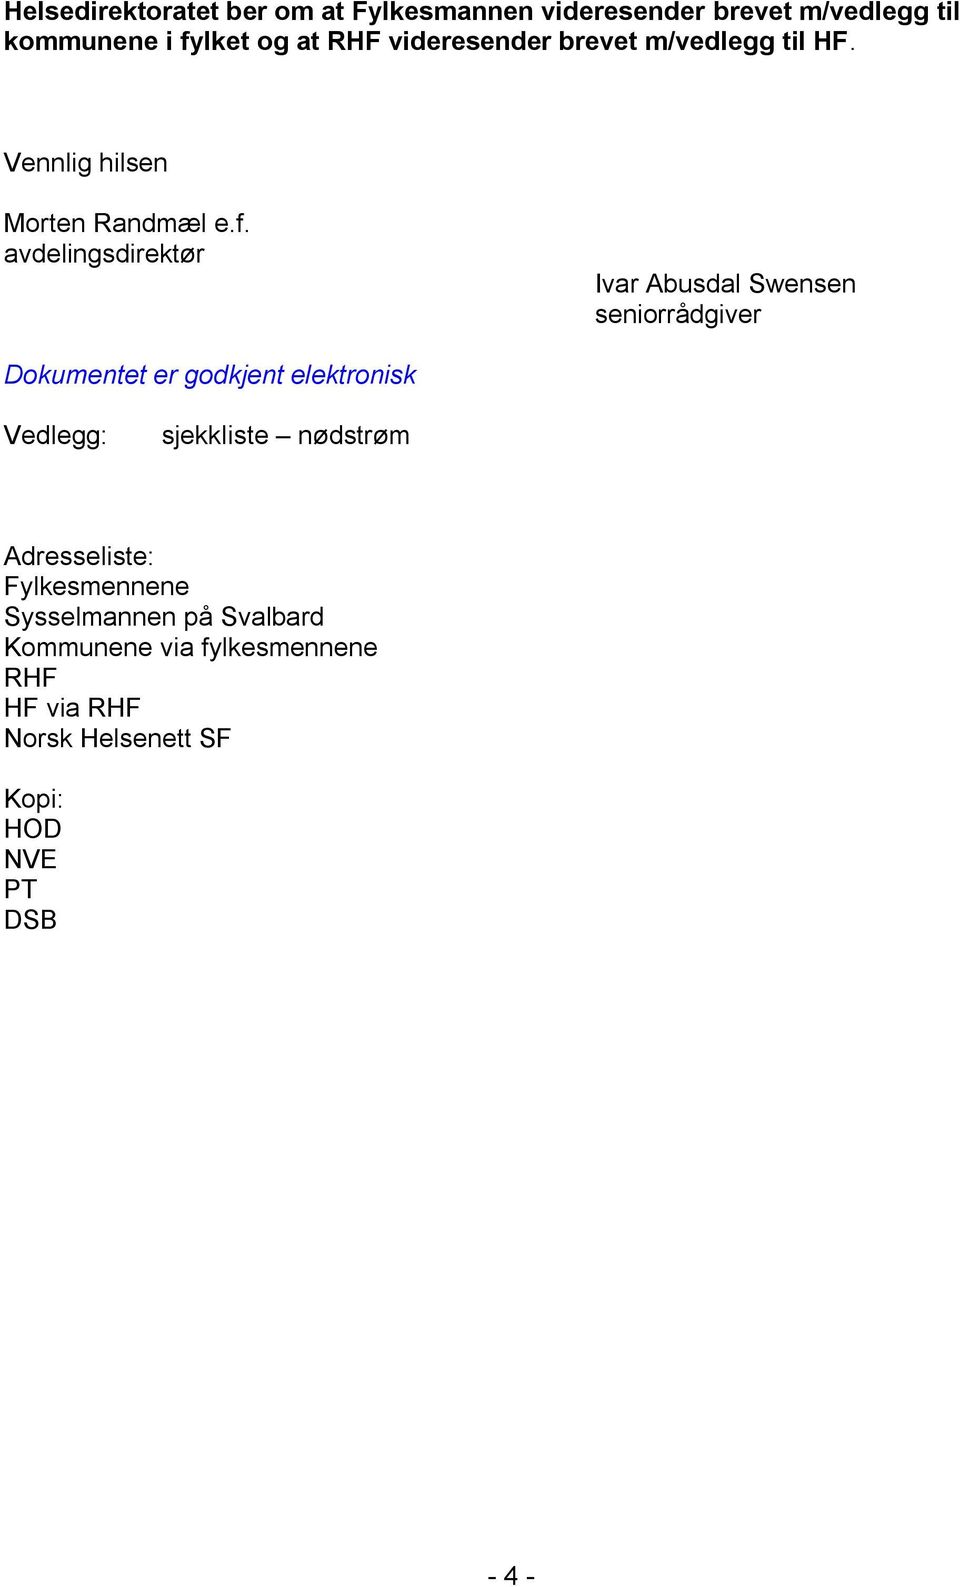 avdelingsdirektør Ivar Abusdal Swensen seniorrådgiver Dokumentet er godkjent elektronisk Vedlegg: sjekkliste